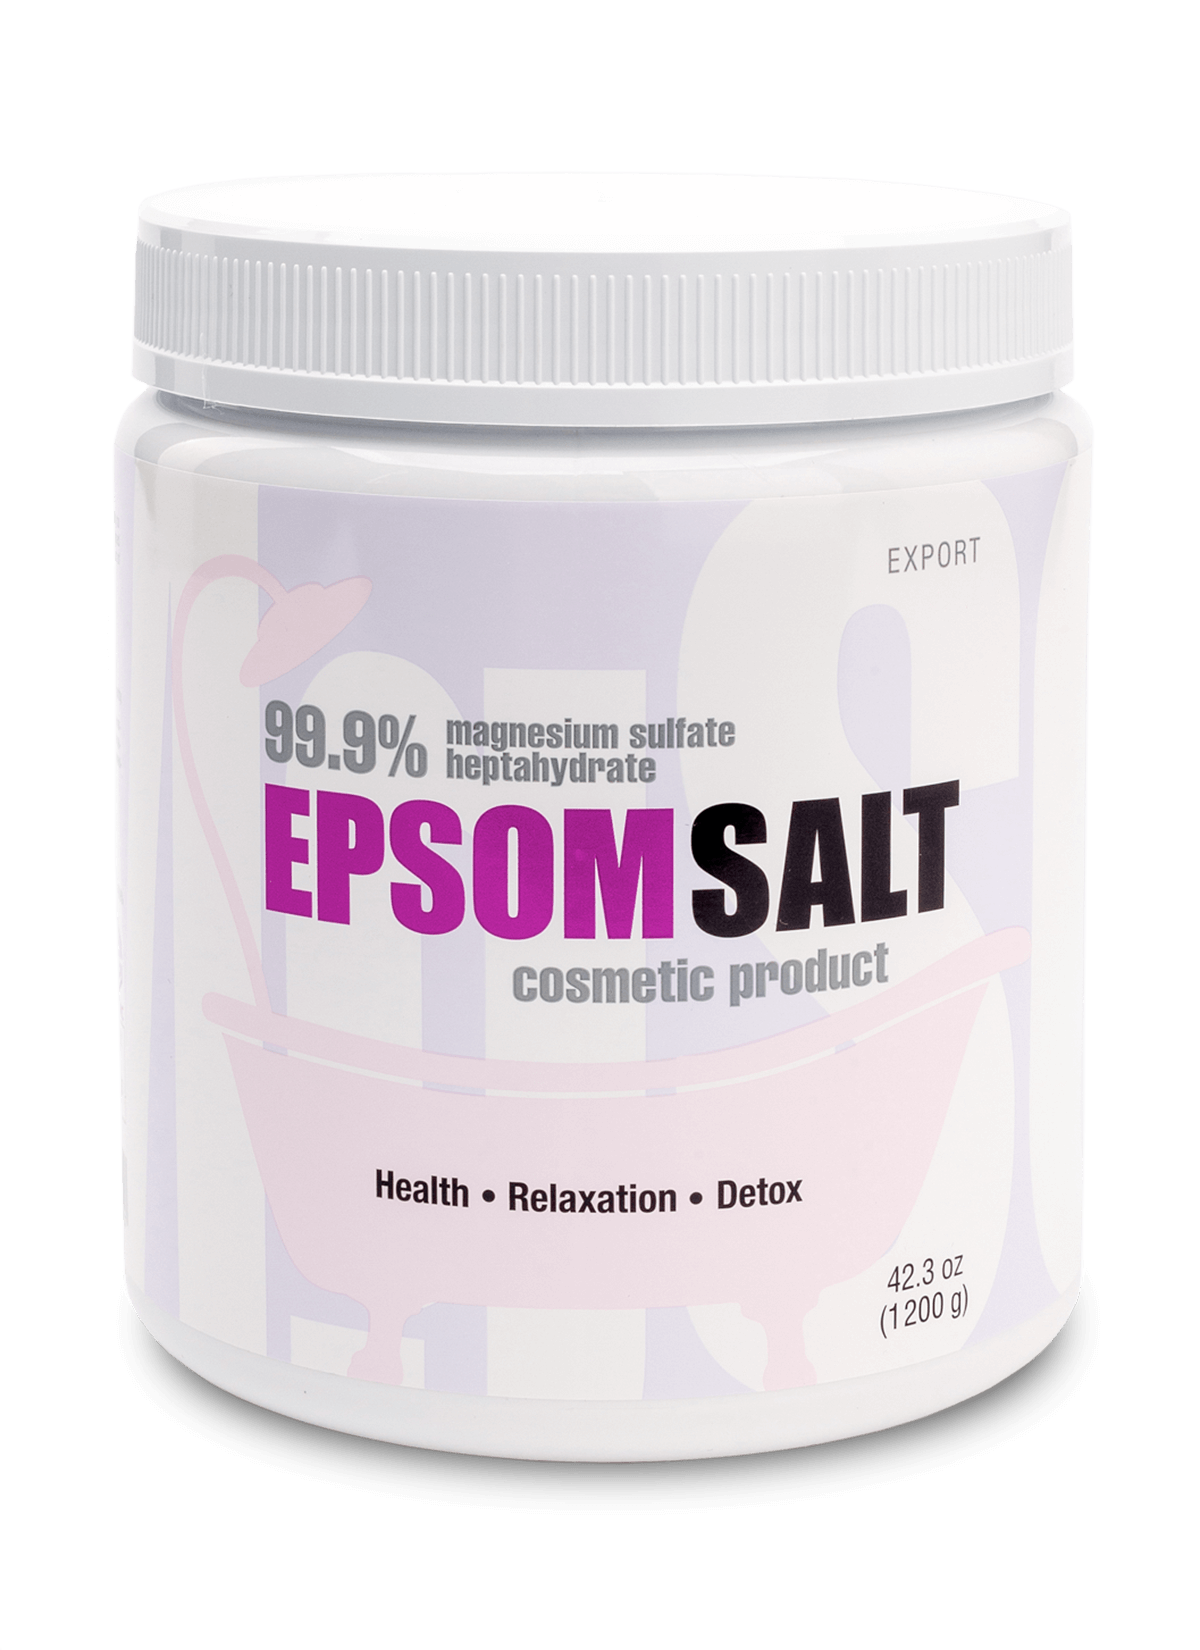 Английская соль EPSOM SALT KAST-EXPO® Export, 1200 гр